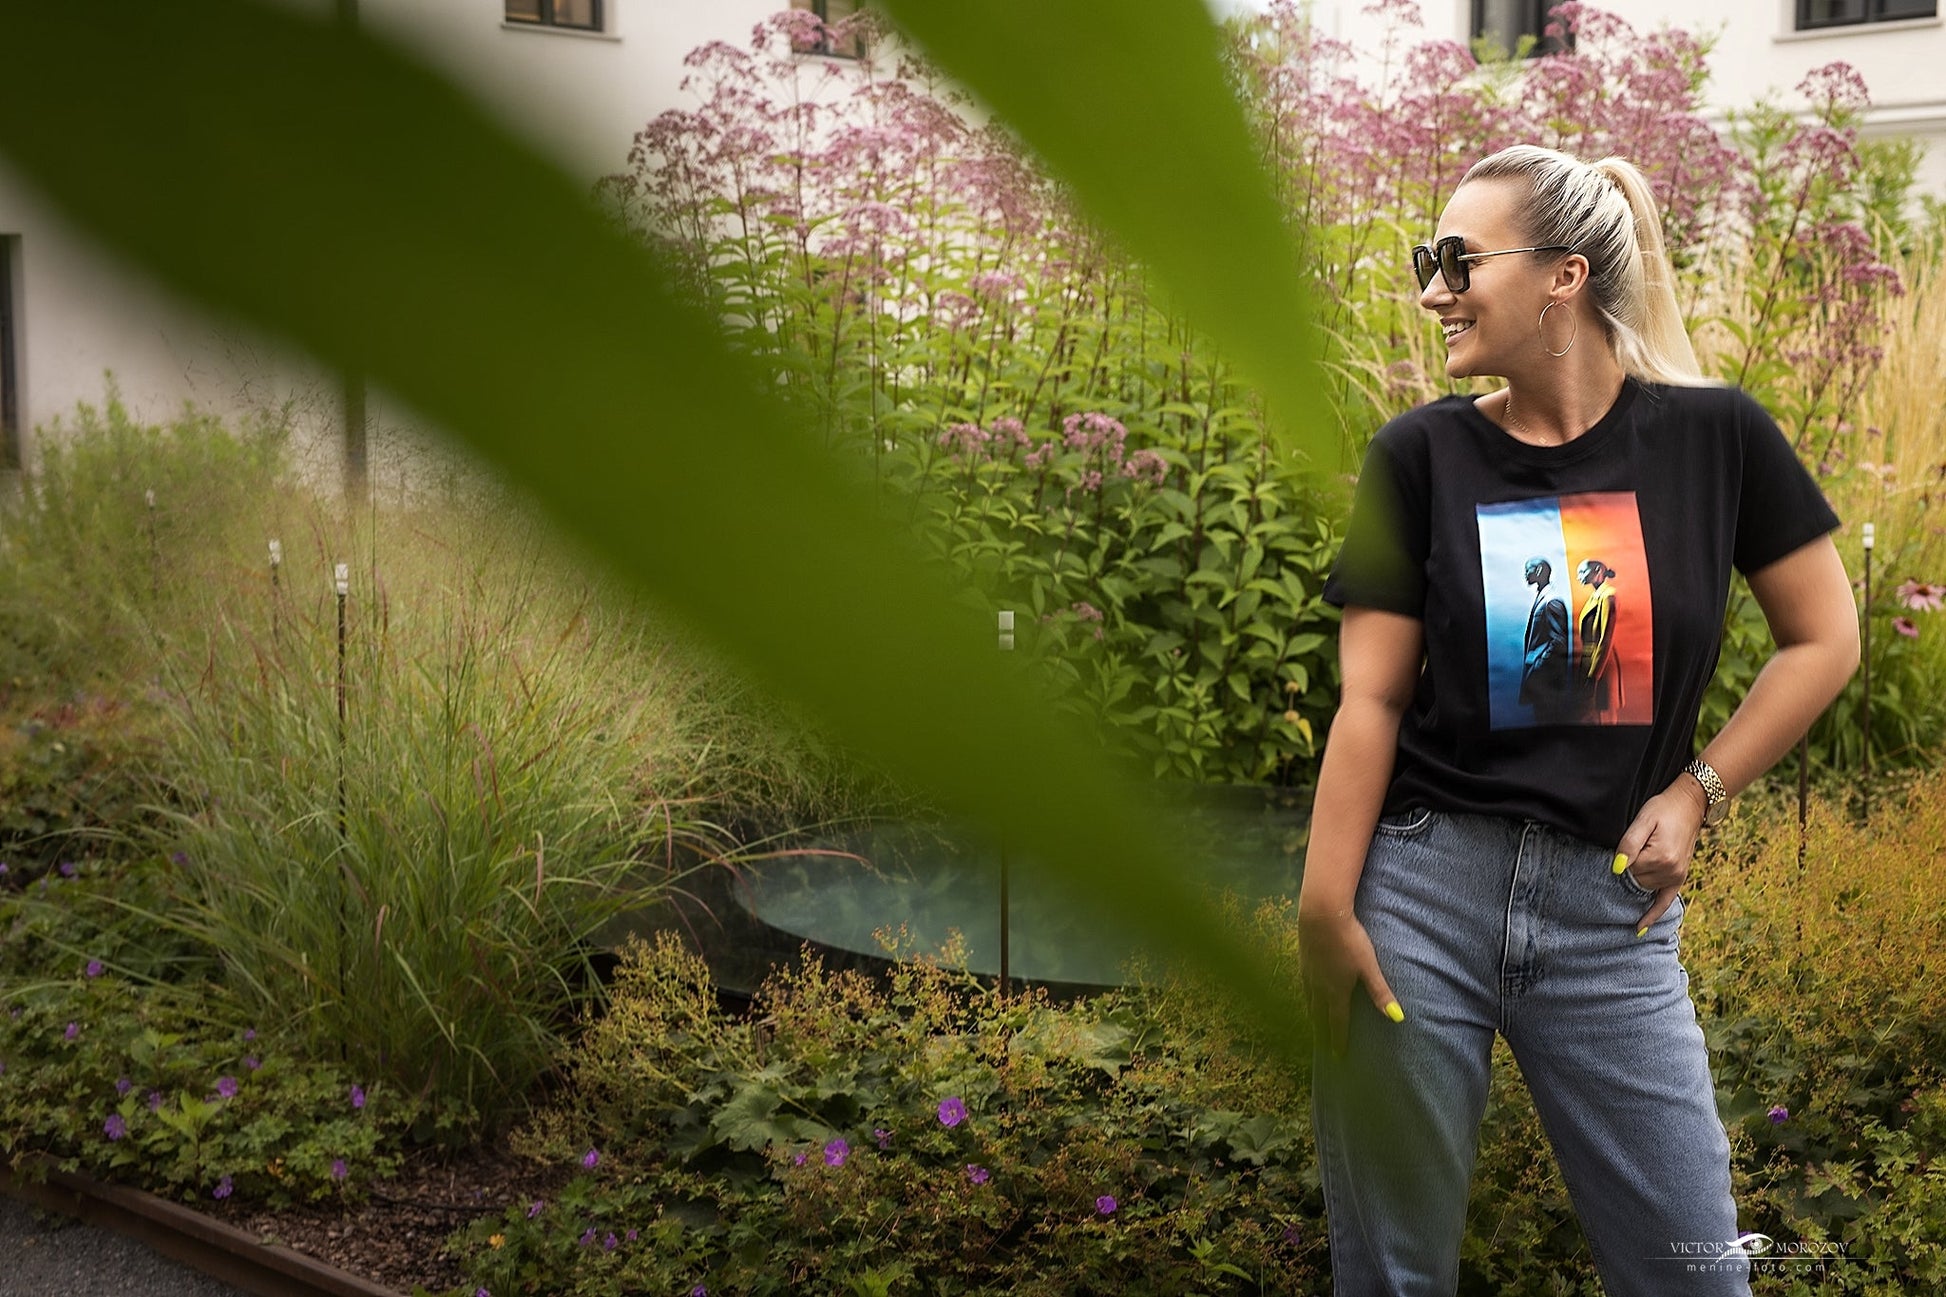 Moteris su "Unique Perceptions" marškinėliais iš Designed By Me kolekcijos, stovinti sode, Moteriški marškinėliai,Visi produktai